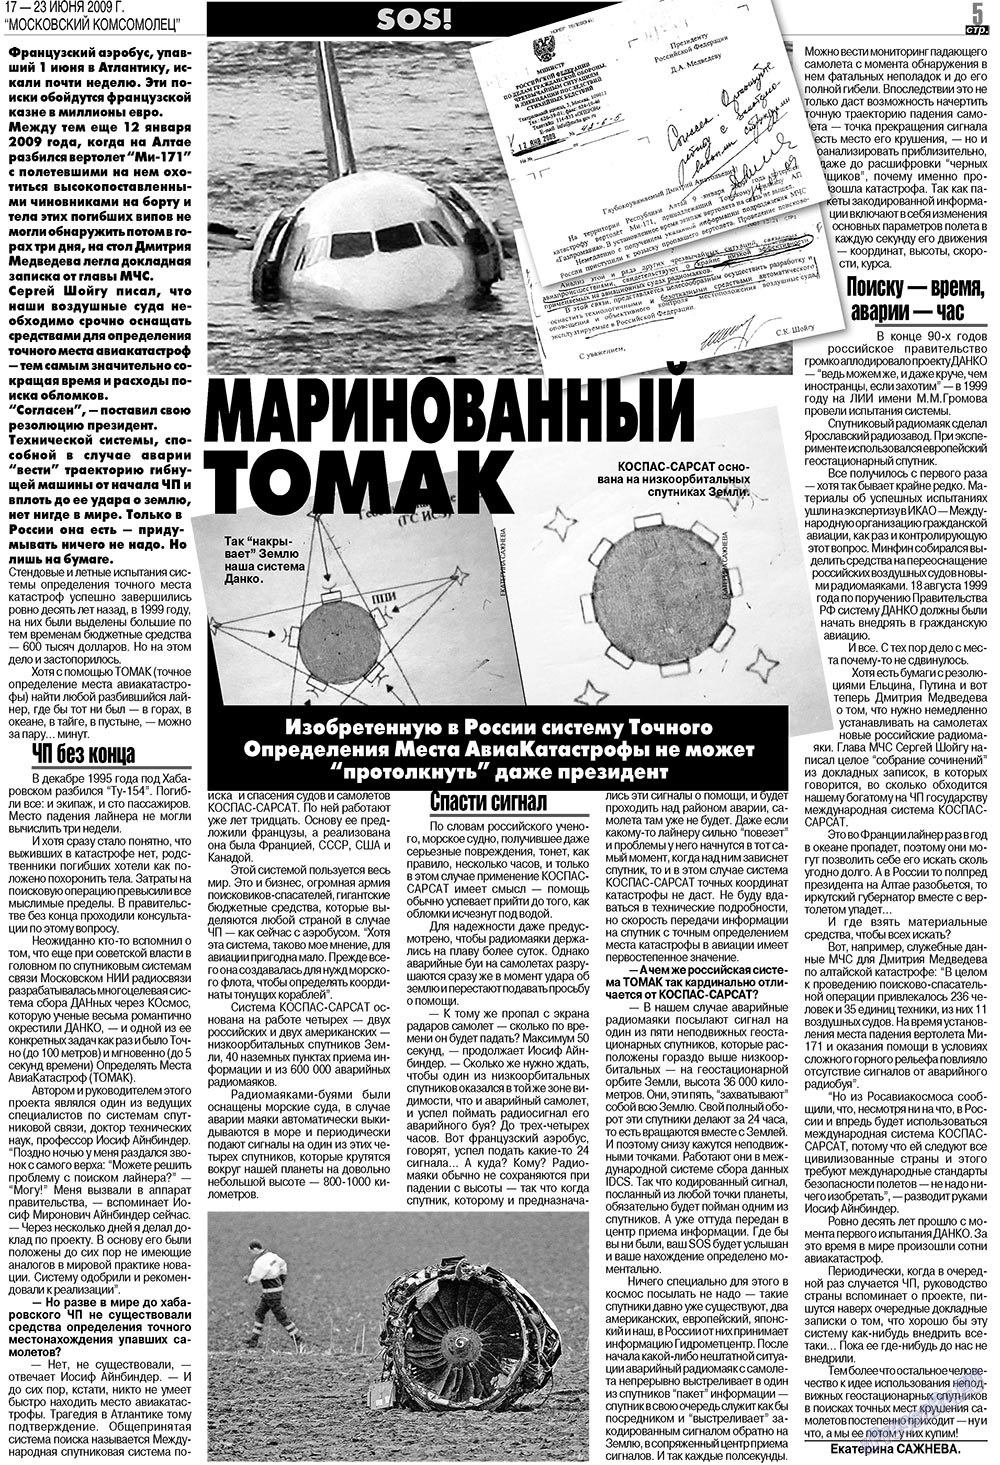 МК Испания, газета. 2009 №25 стр.5